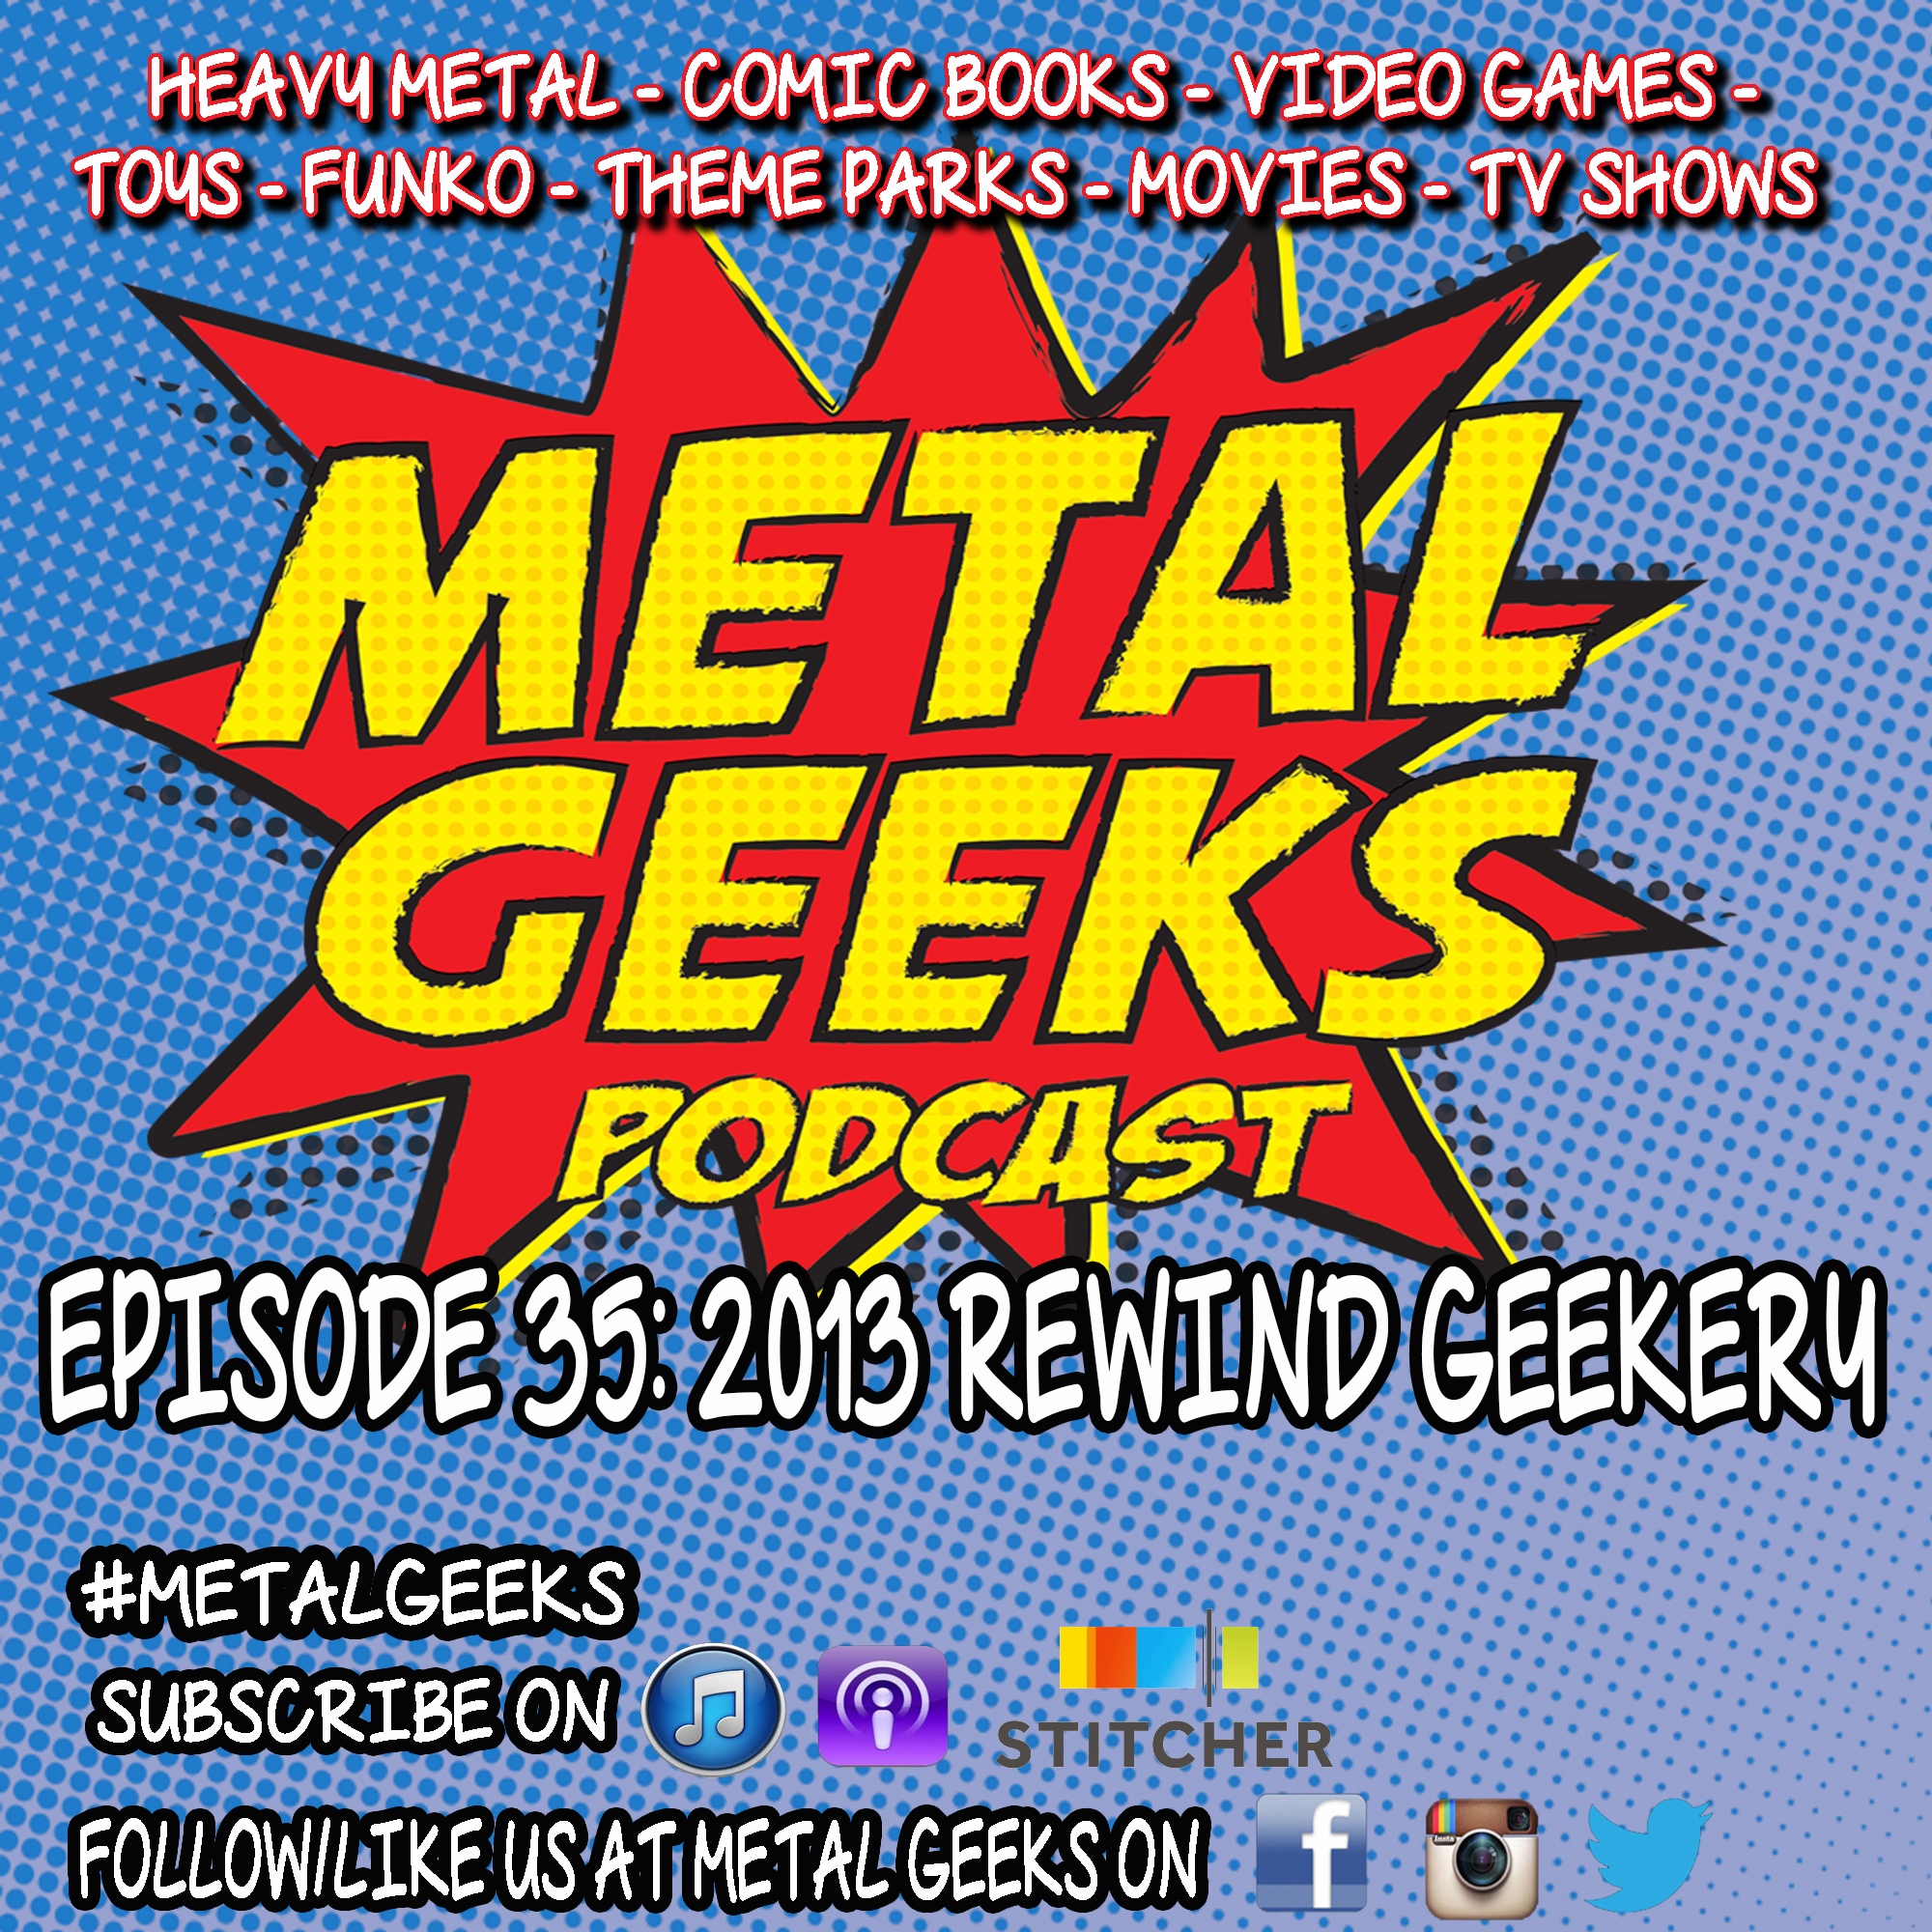 Metal Geeks 35: 2013 Rewind Geekery